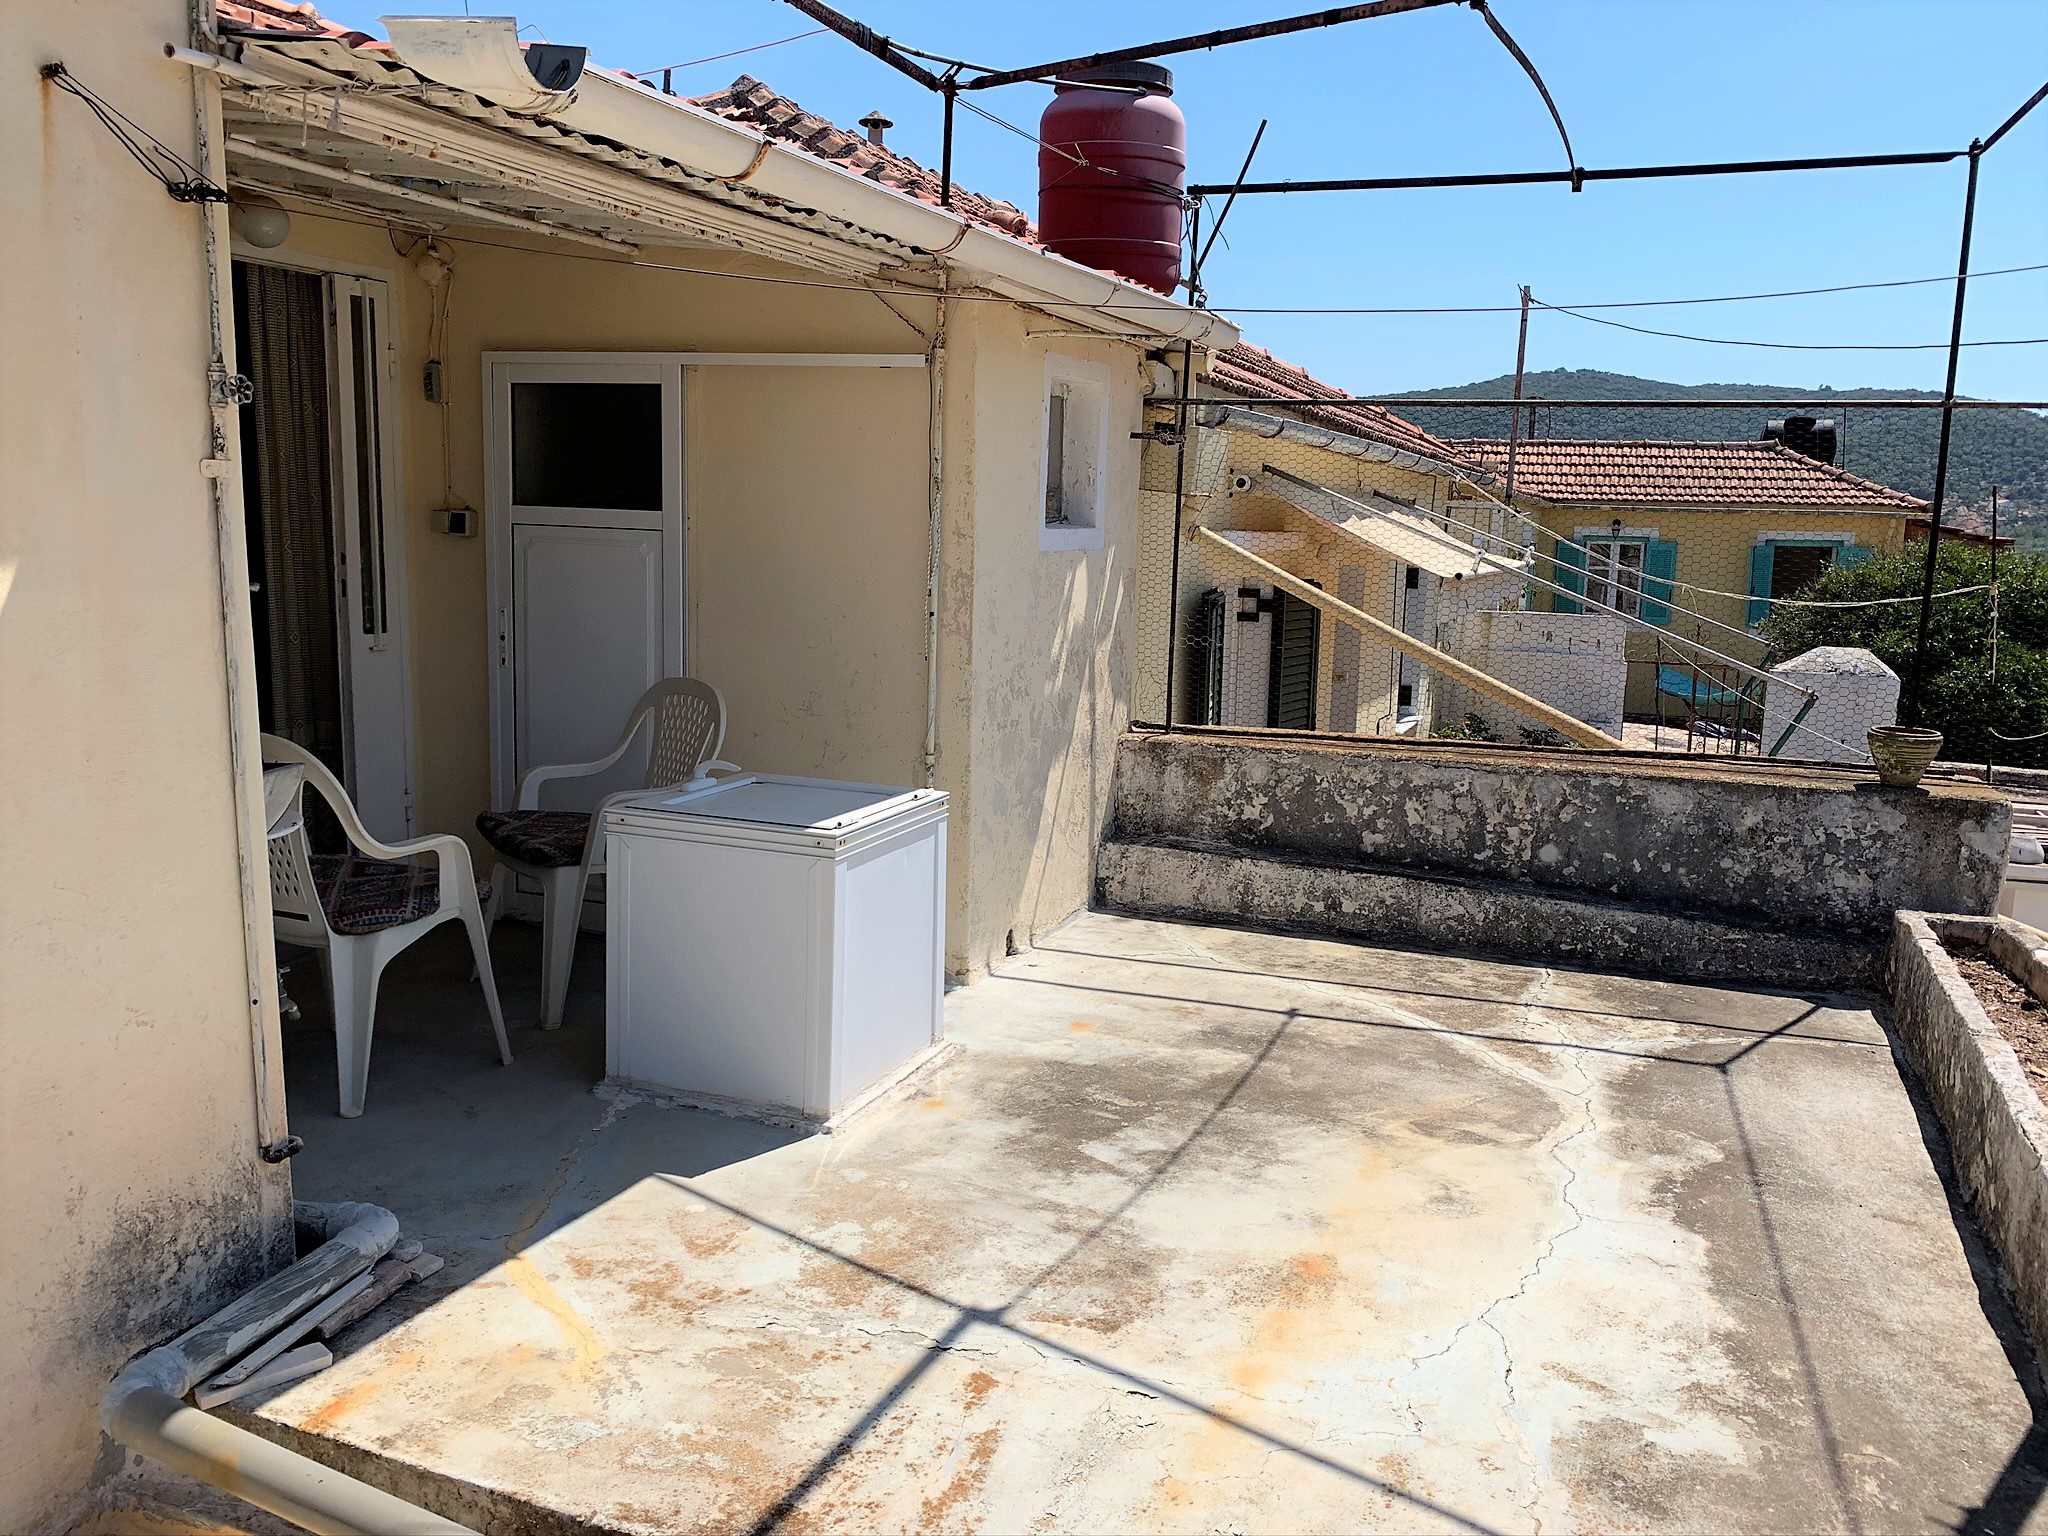 Εξωτερική πρόσοψη και εξωτερική βεράντα του σπιτιού προς πώληση στην Ιθάκη Ελλάδα, Βαθύ